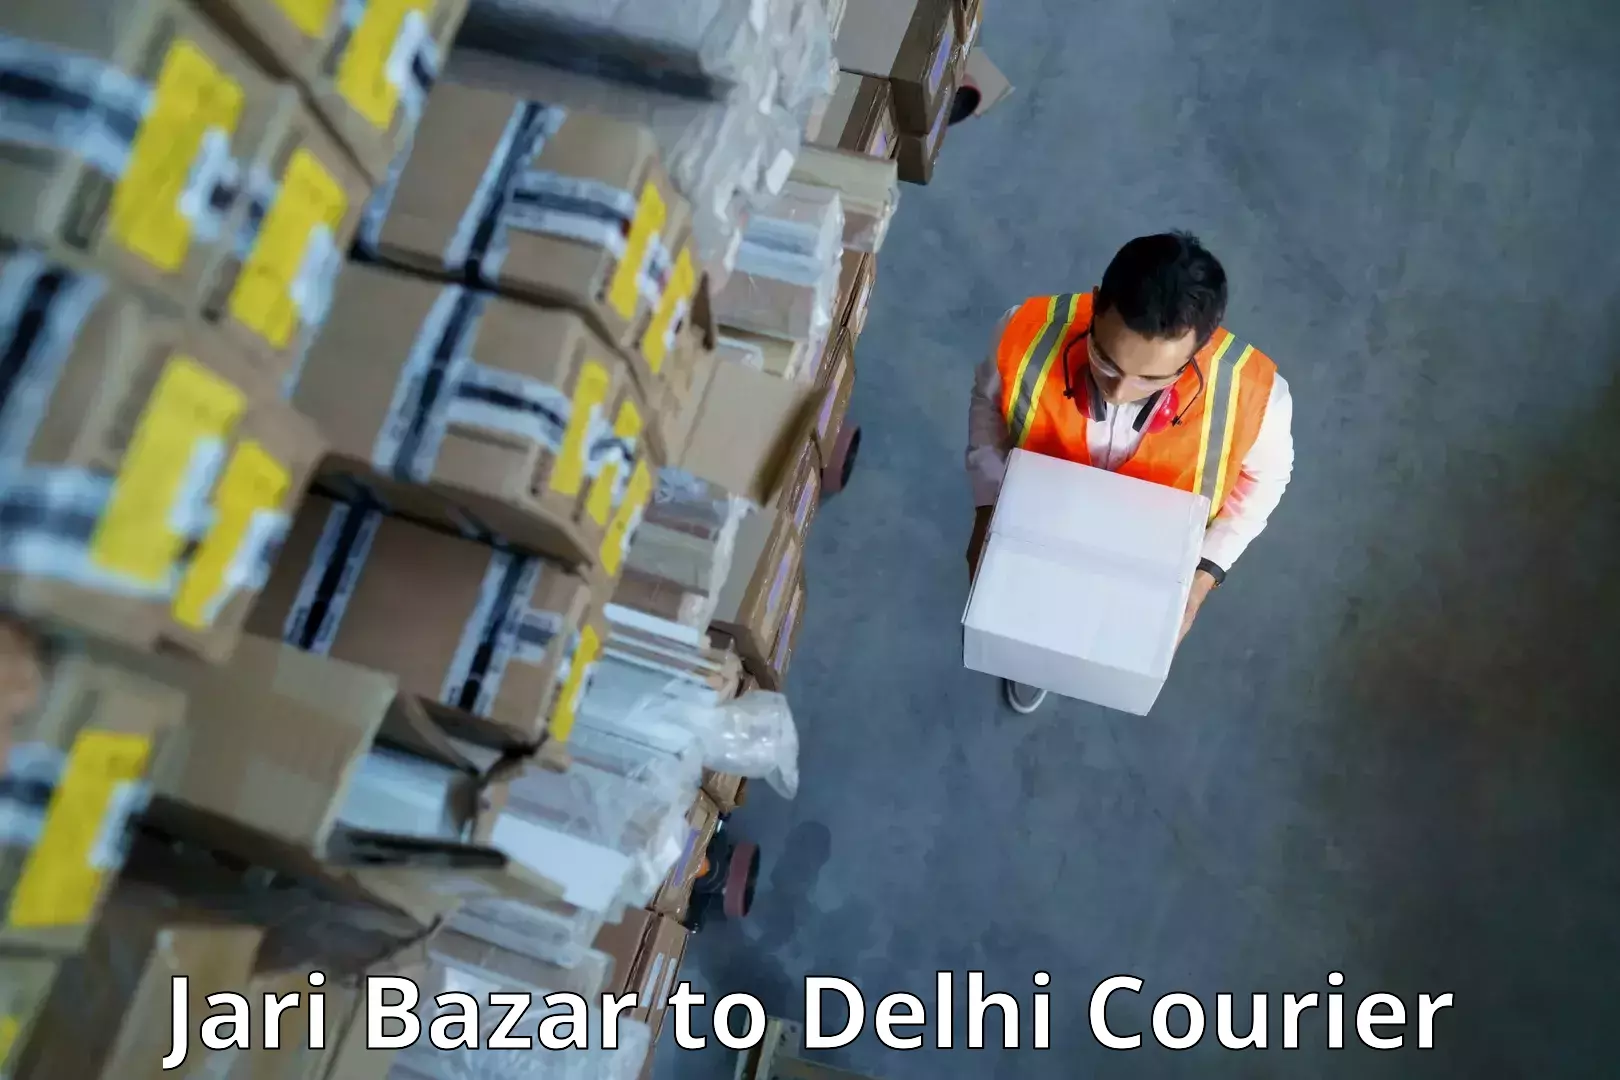 Express logistics service Jari Bazar to Delhi